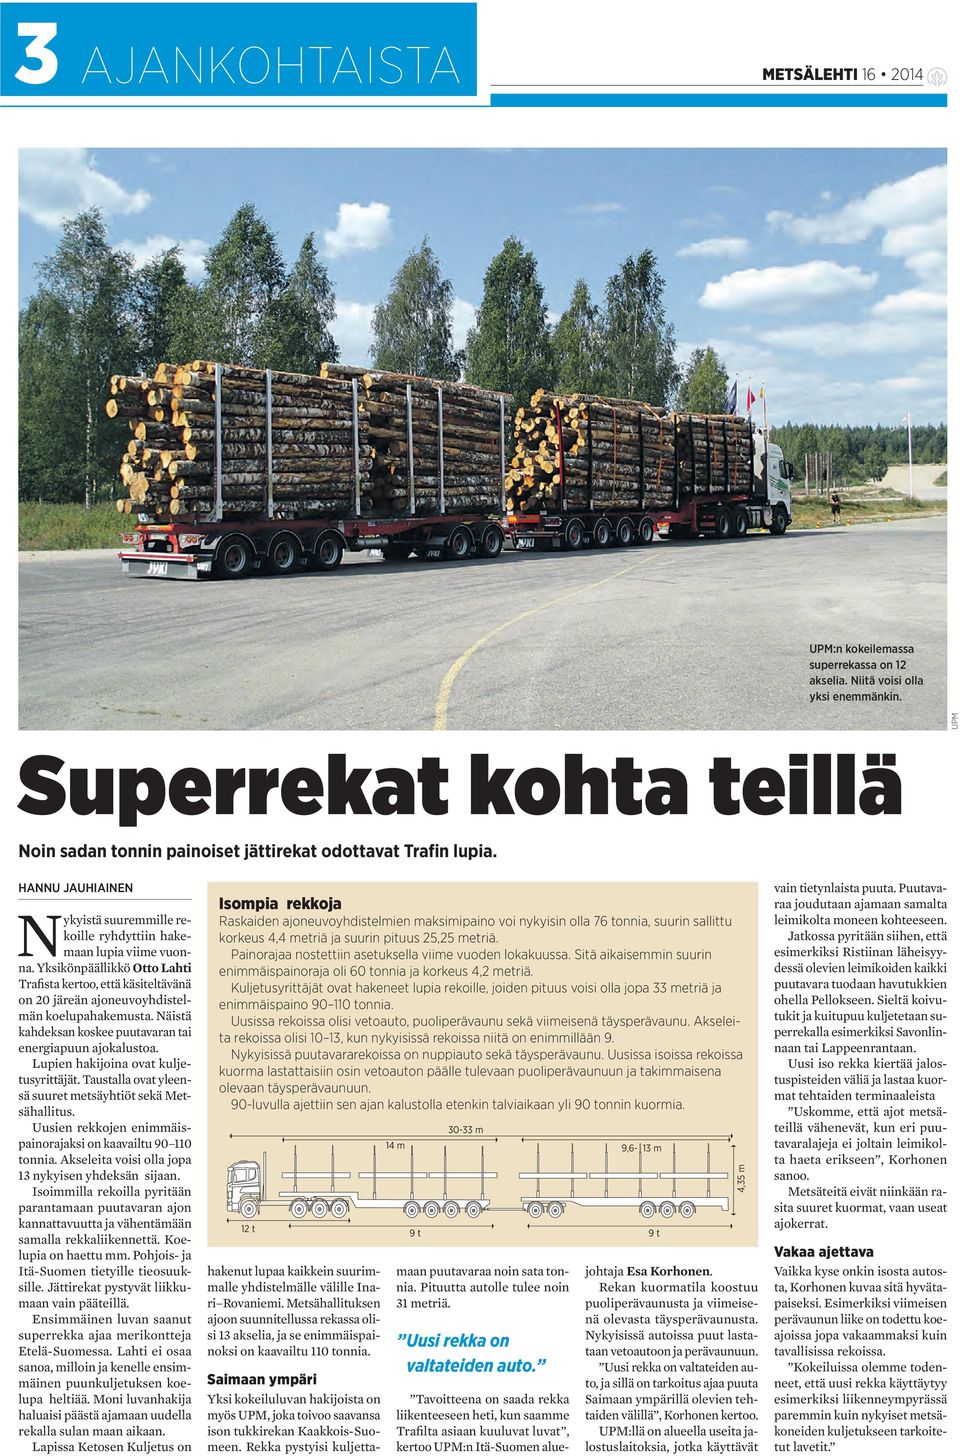 Yksikönpäällikkö Otto Lahti Trafista kertoo, että käsiteltävänä on 20 järeän ajoneuvoyhdistelmän koelupahakemusta. Näistä kahdeksan koskee puutavaran tai energiapuun ajokalustoa.